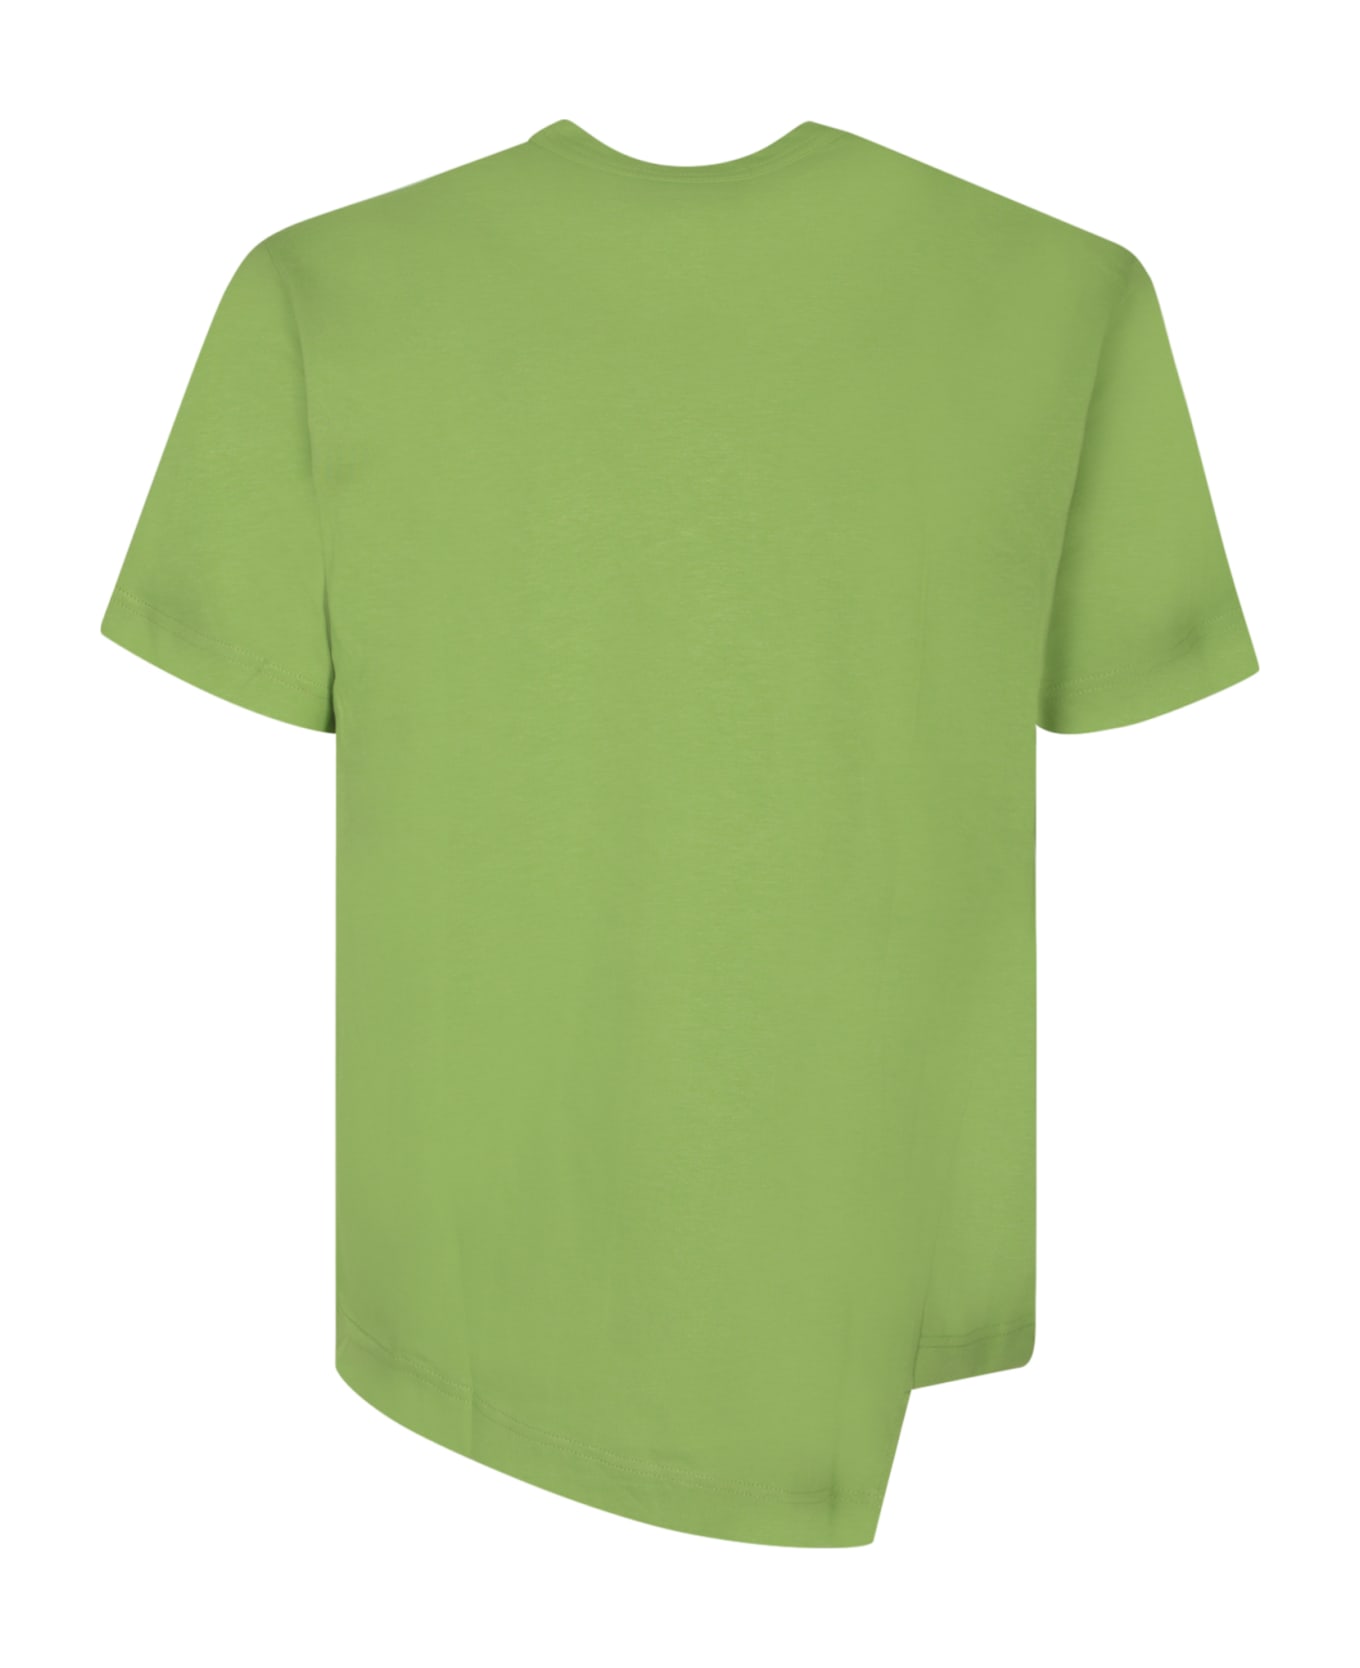 Comme des Garçons Shirt Asymmetric Green T-shirt - Green シャツ